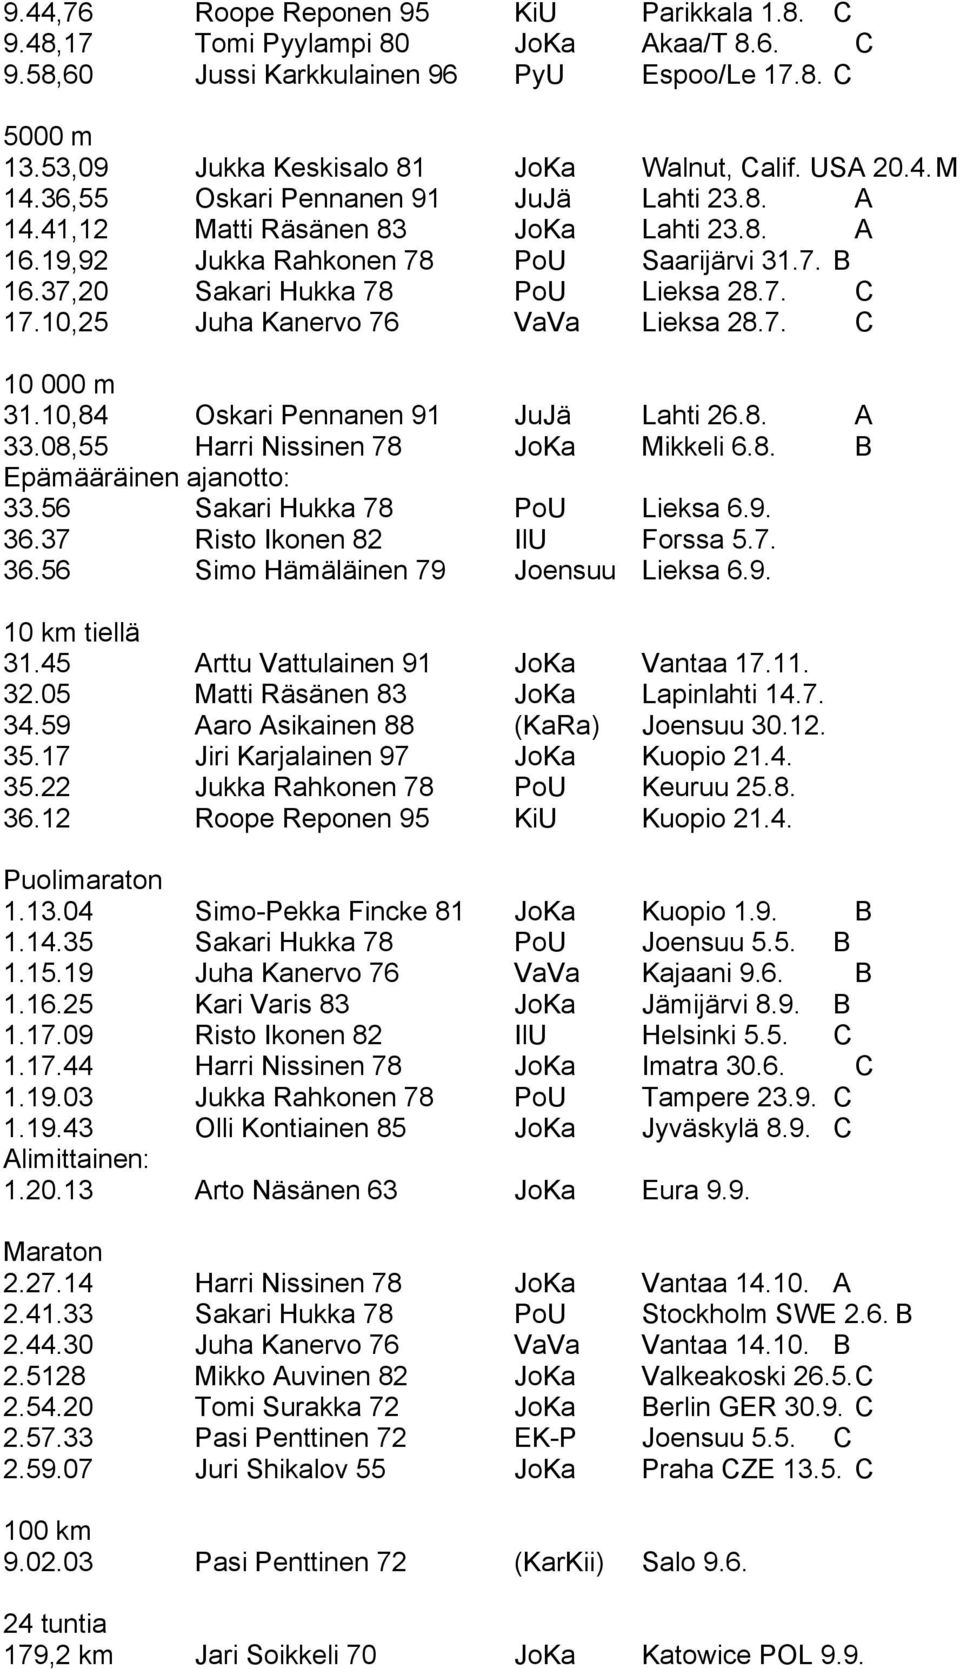 10,25 Juha Kanervo 76 VaVa Lieksa 28.7. C 10 000 m 31.10,84 Oskari Pennanen 91 JuJä Lahti 26.8. A 33.08,55 Harri Nissinen 78 JoKa Mikkeli 6.8. B Epämääräinen ajanotto: 33.